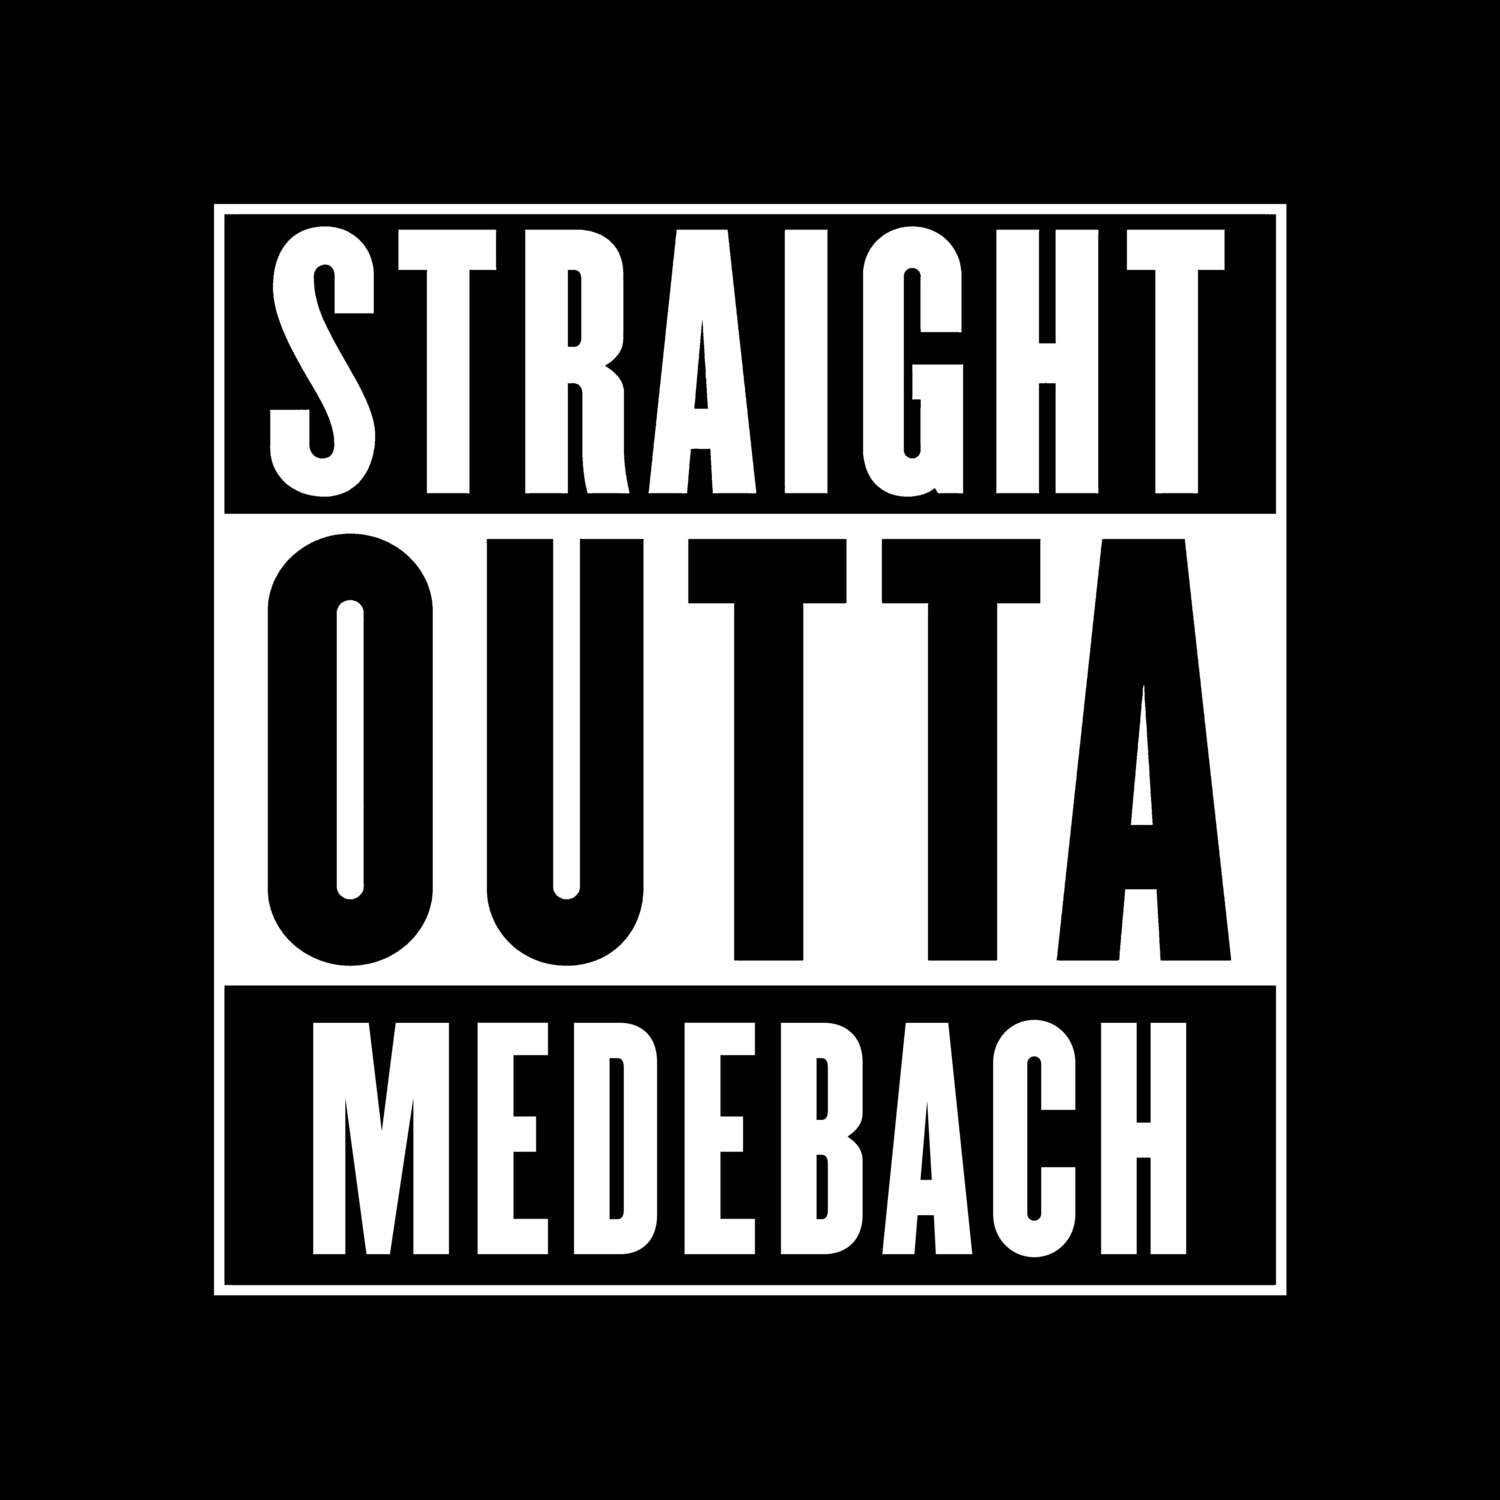 Medebach T-Shirt »Straight Outta«